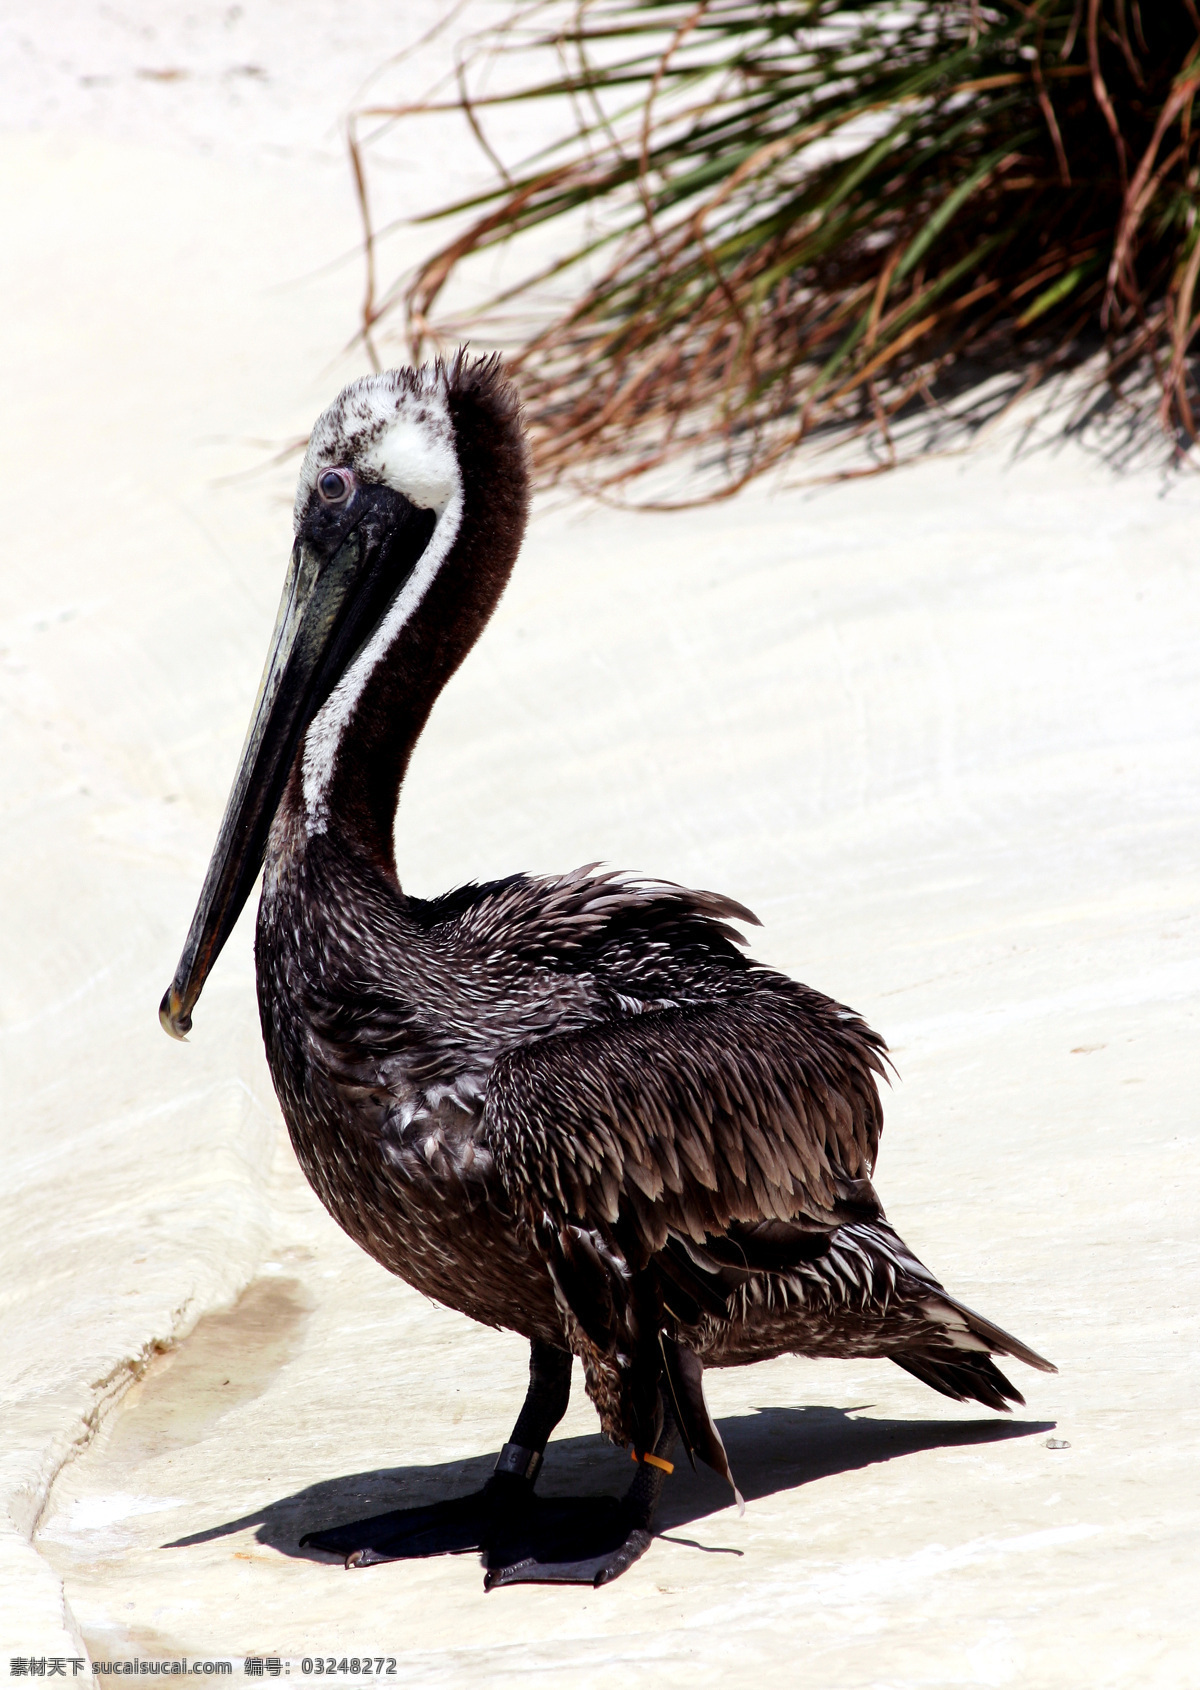 海鸟 保护 动物 海滩 鸟 鸟类 沙滩 生物世界 小鸟 珍贵 野生 醍醐 野生动物